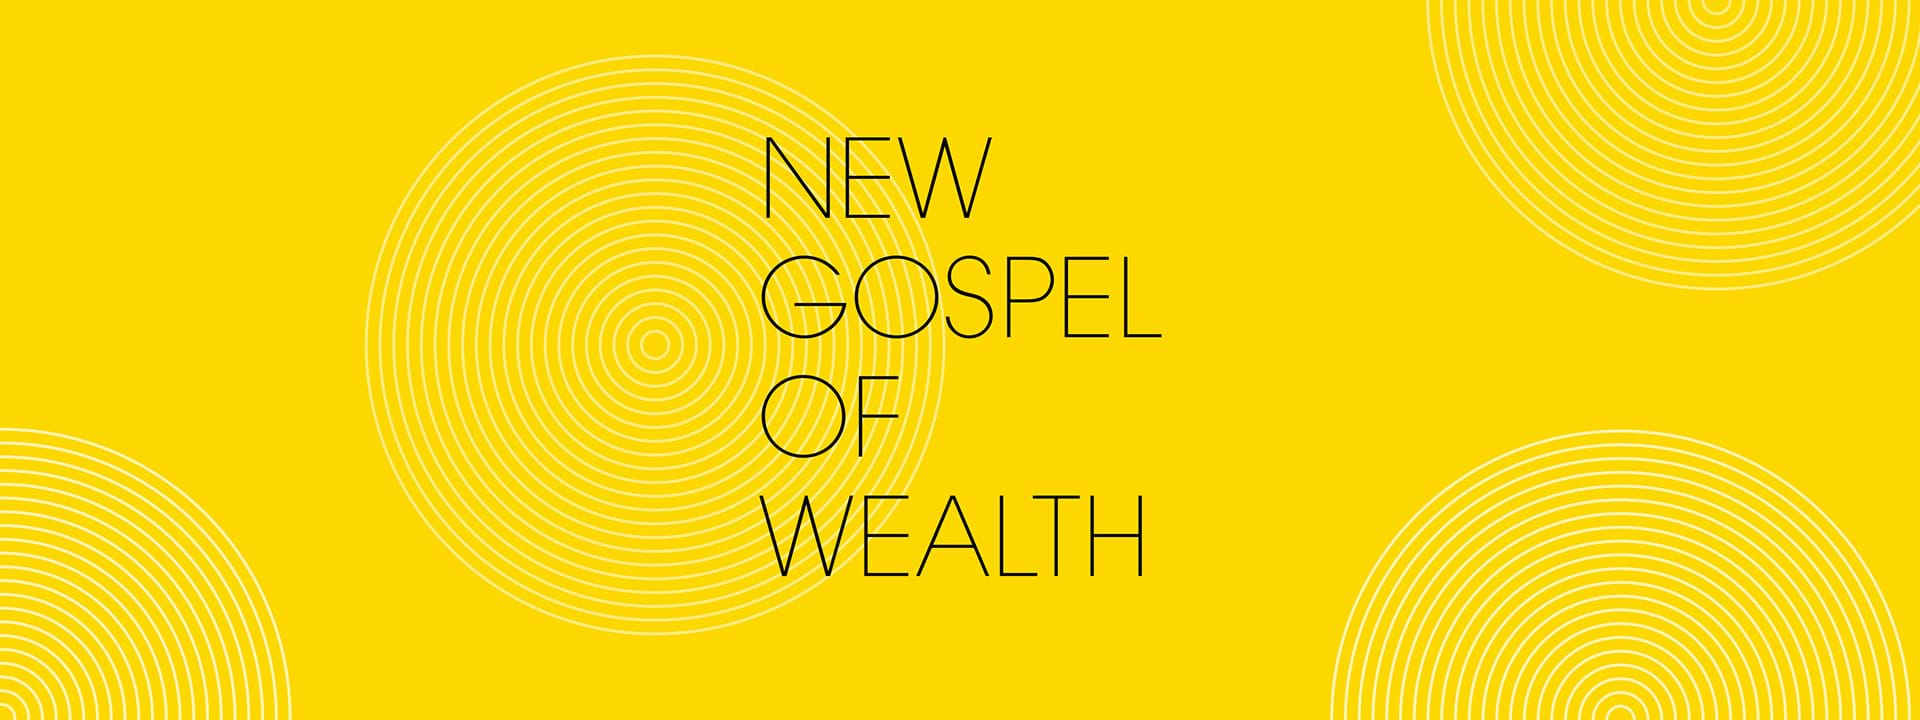 New Gospel of Wealth